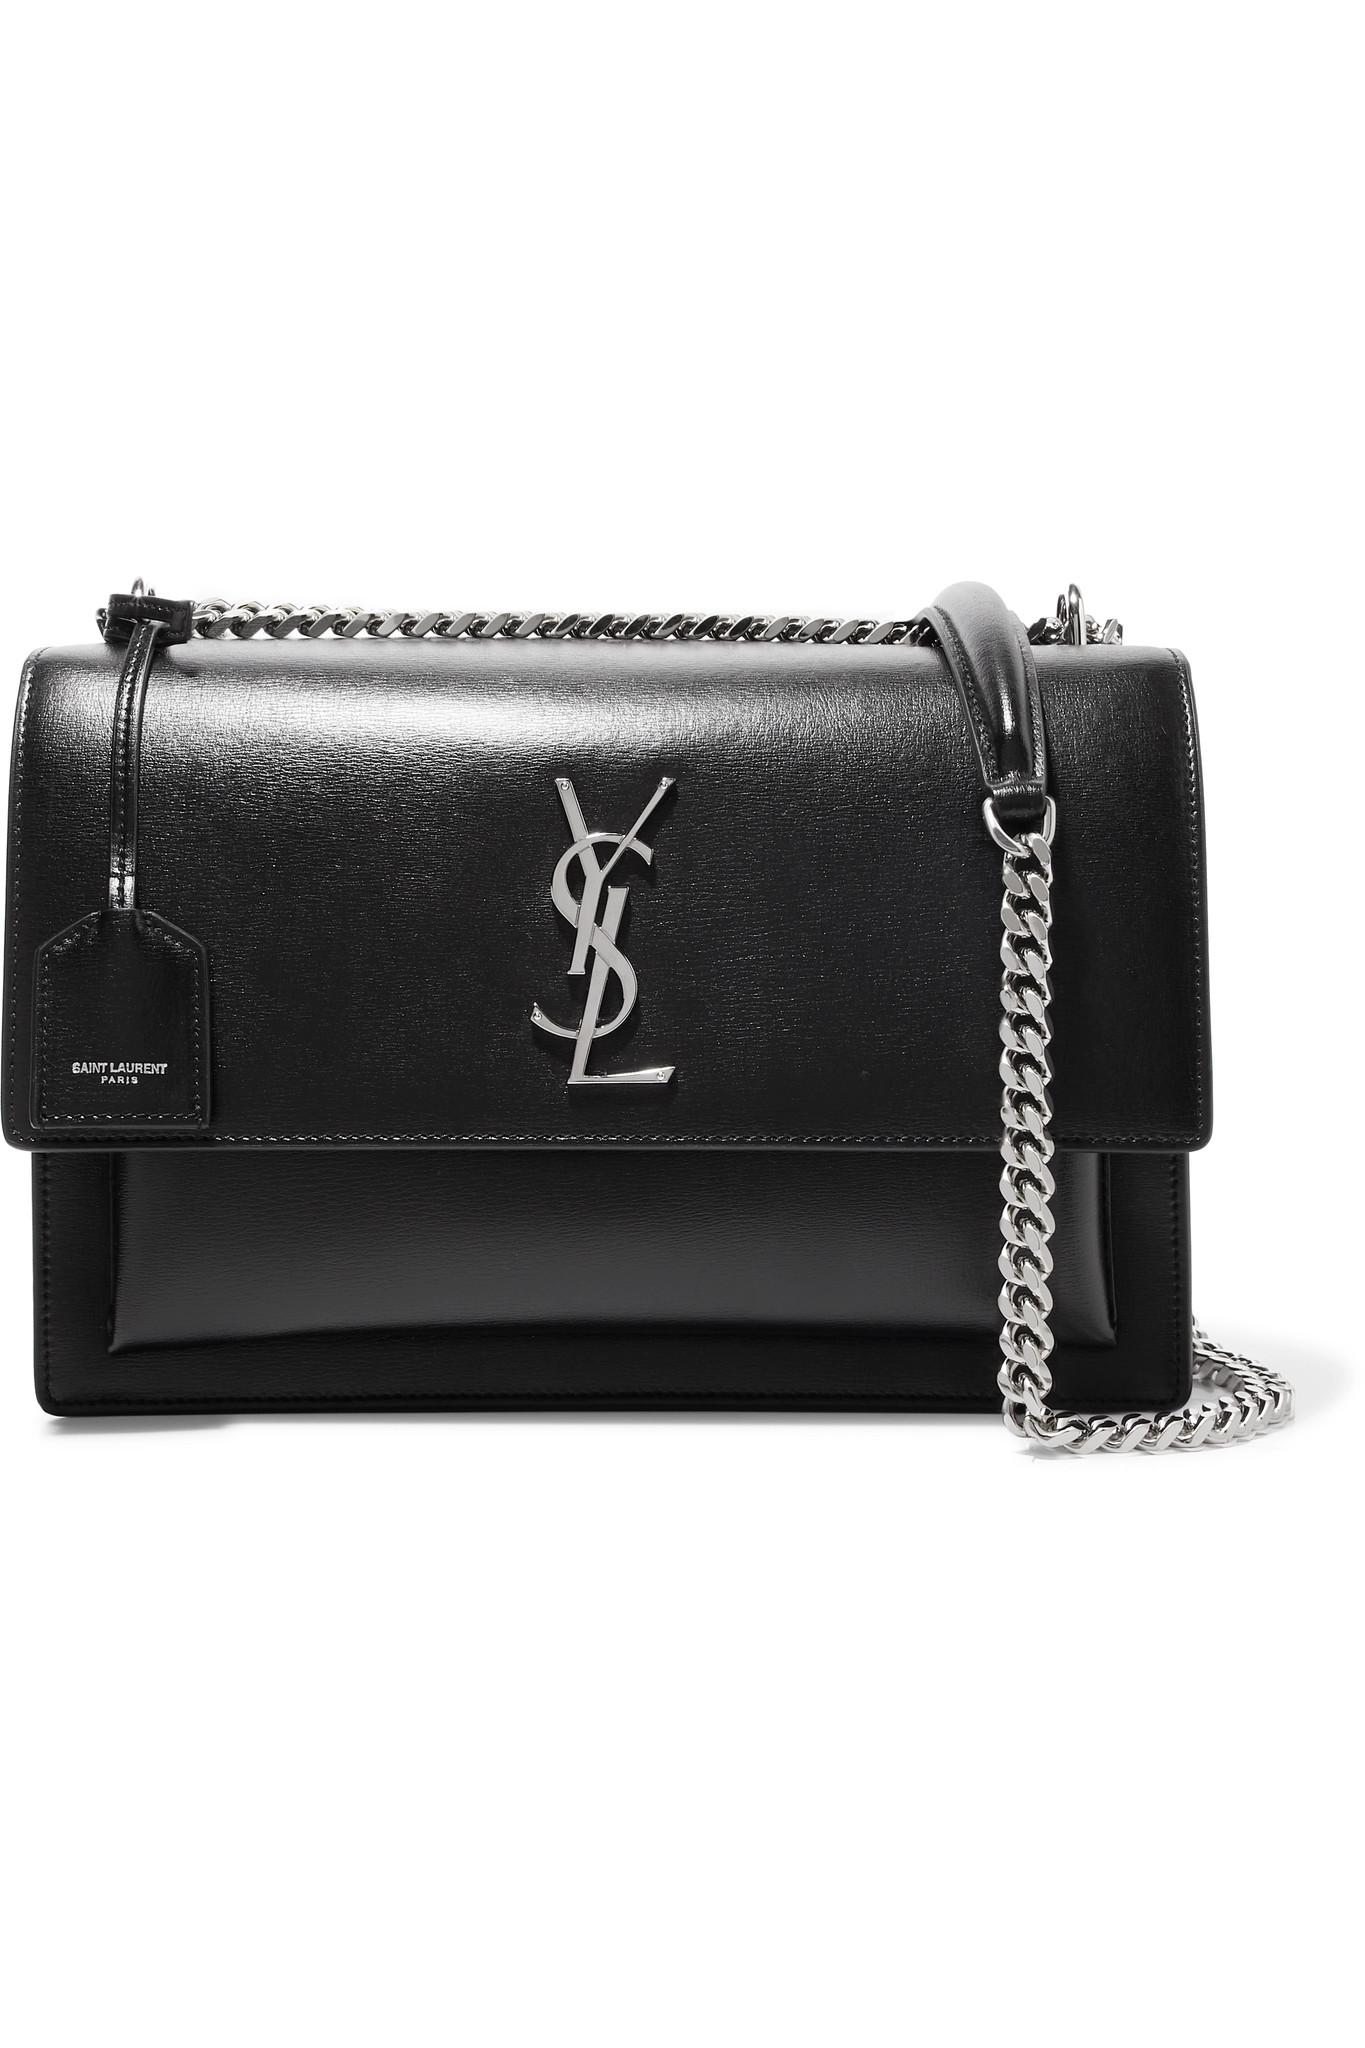 Yves Saint Laurent - Black Leather Shoulder Bag w/ Antler Handle